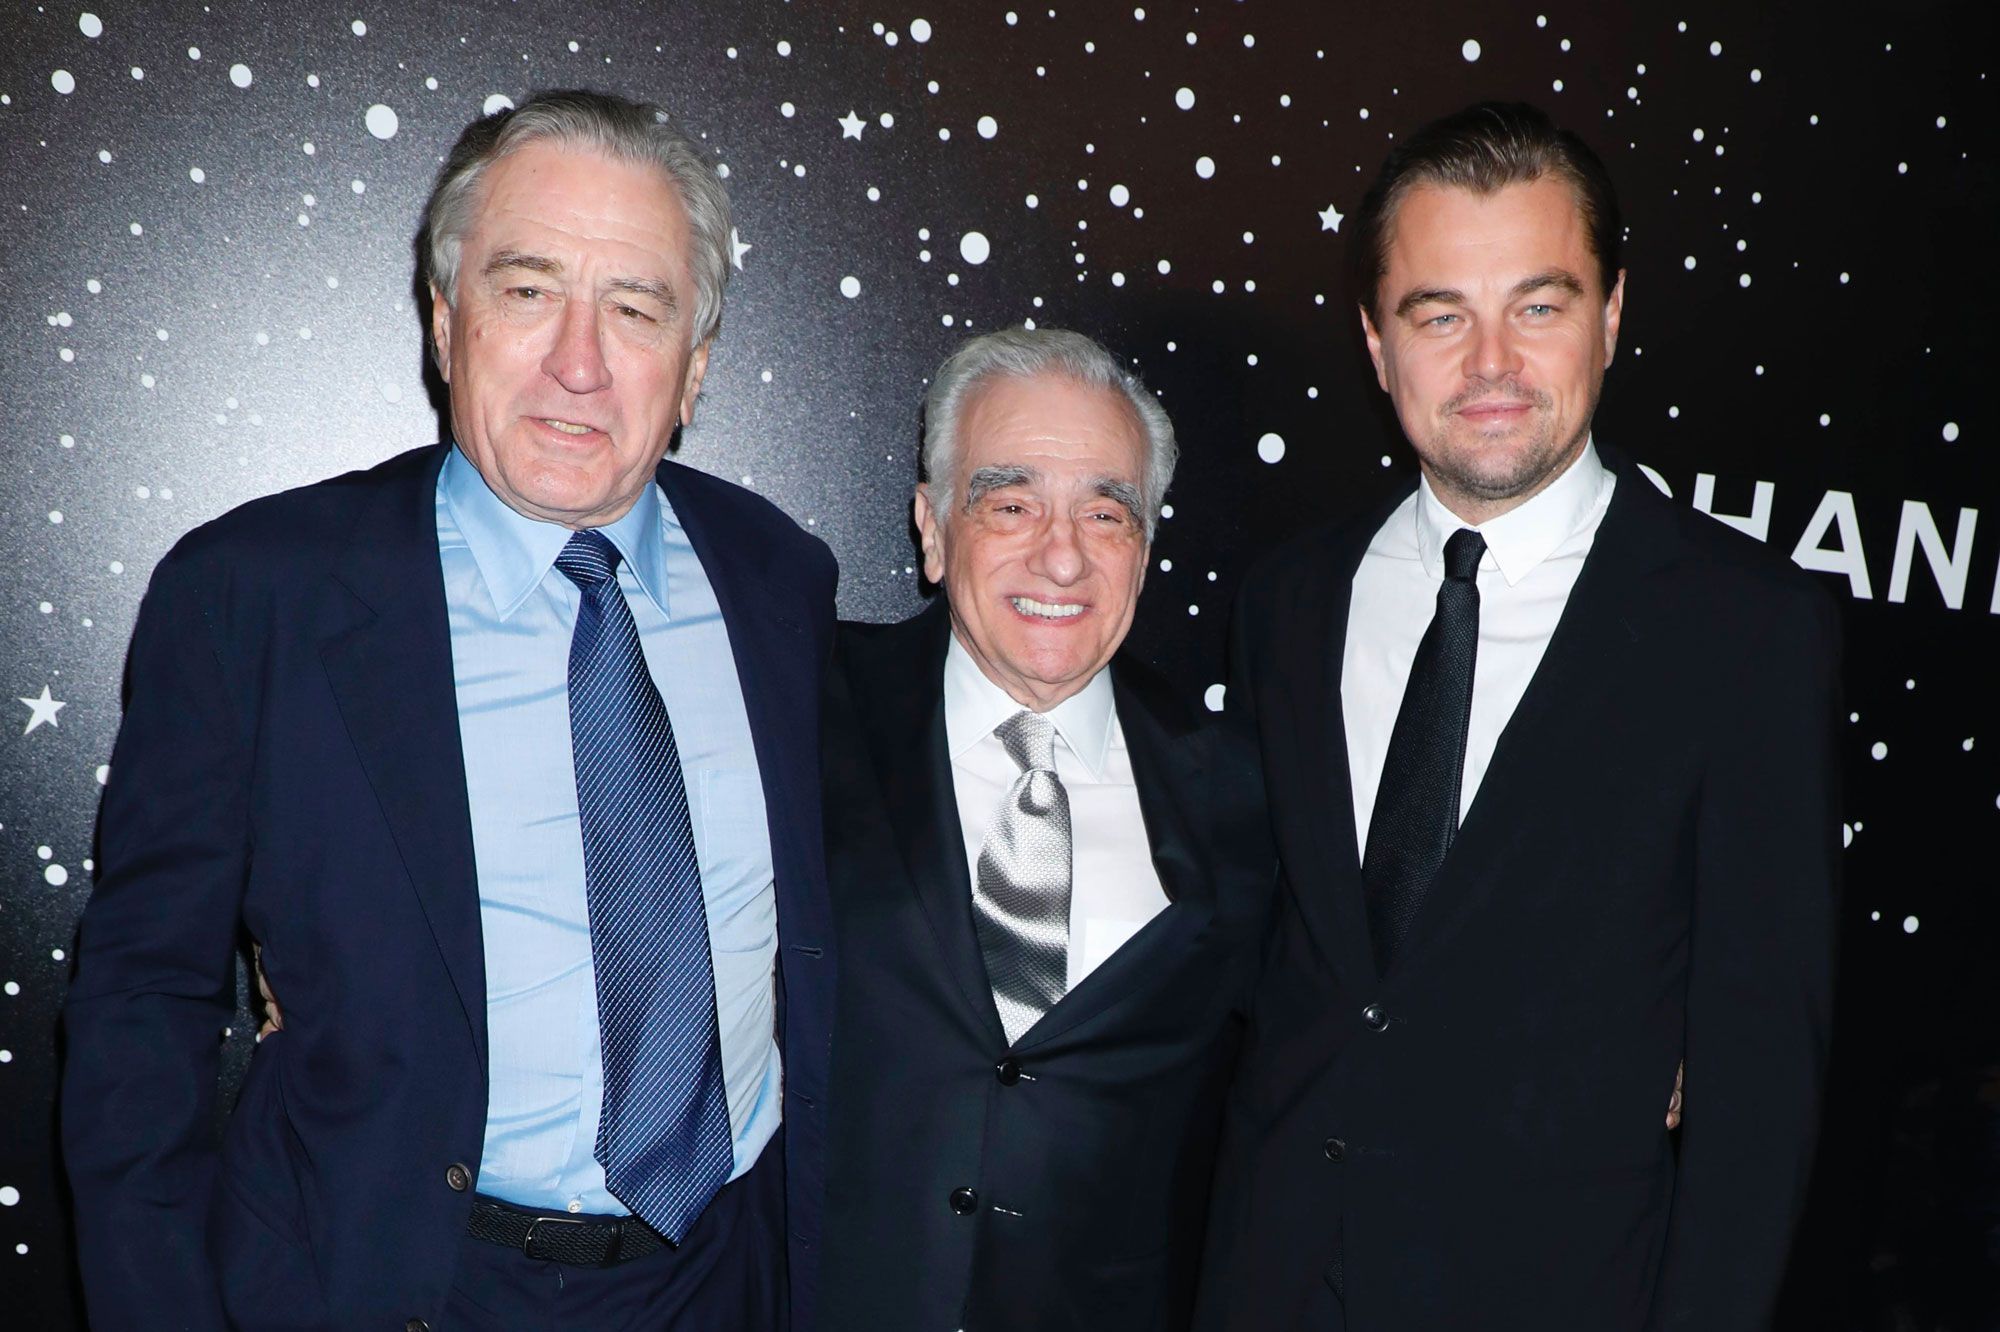 Robert de Niro et Leonardo DiCaprio réunis chez Scorsese ?